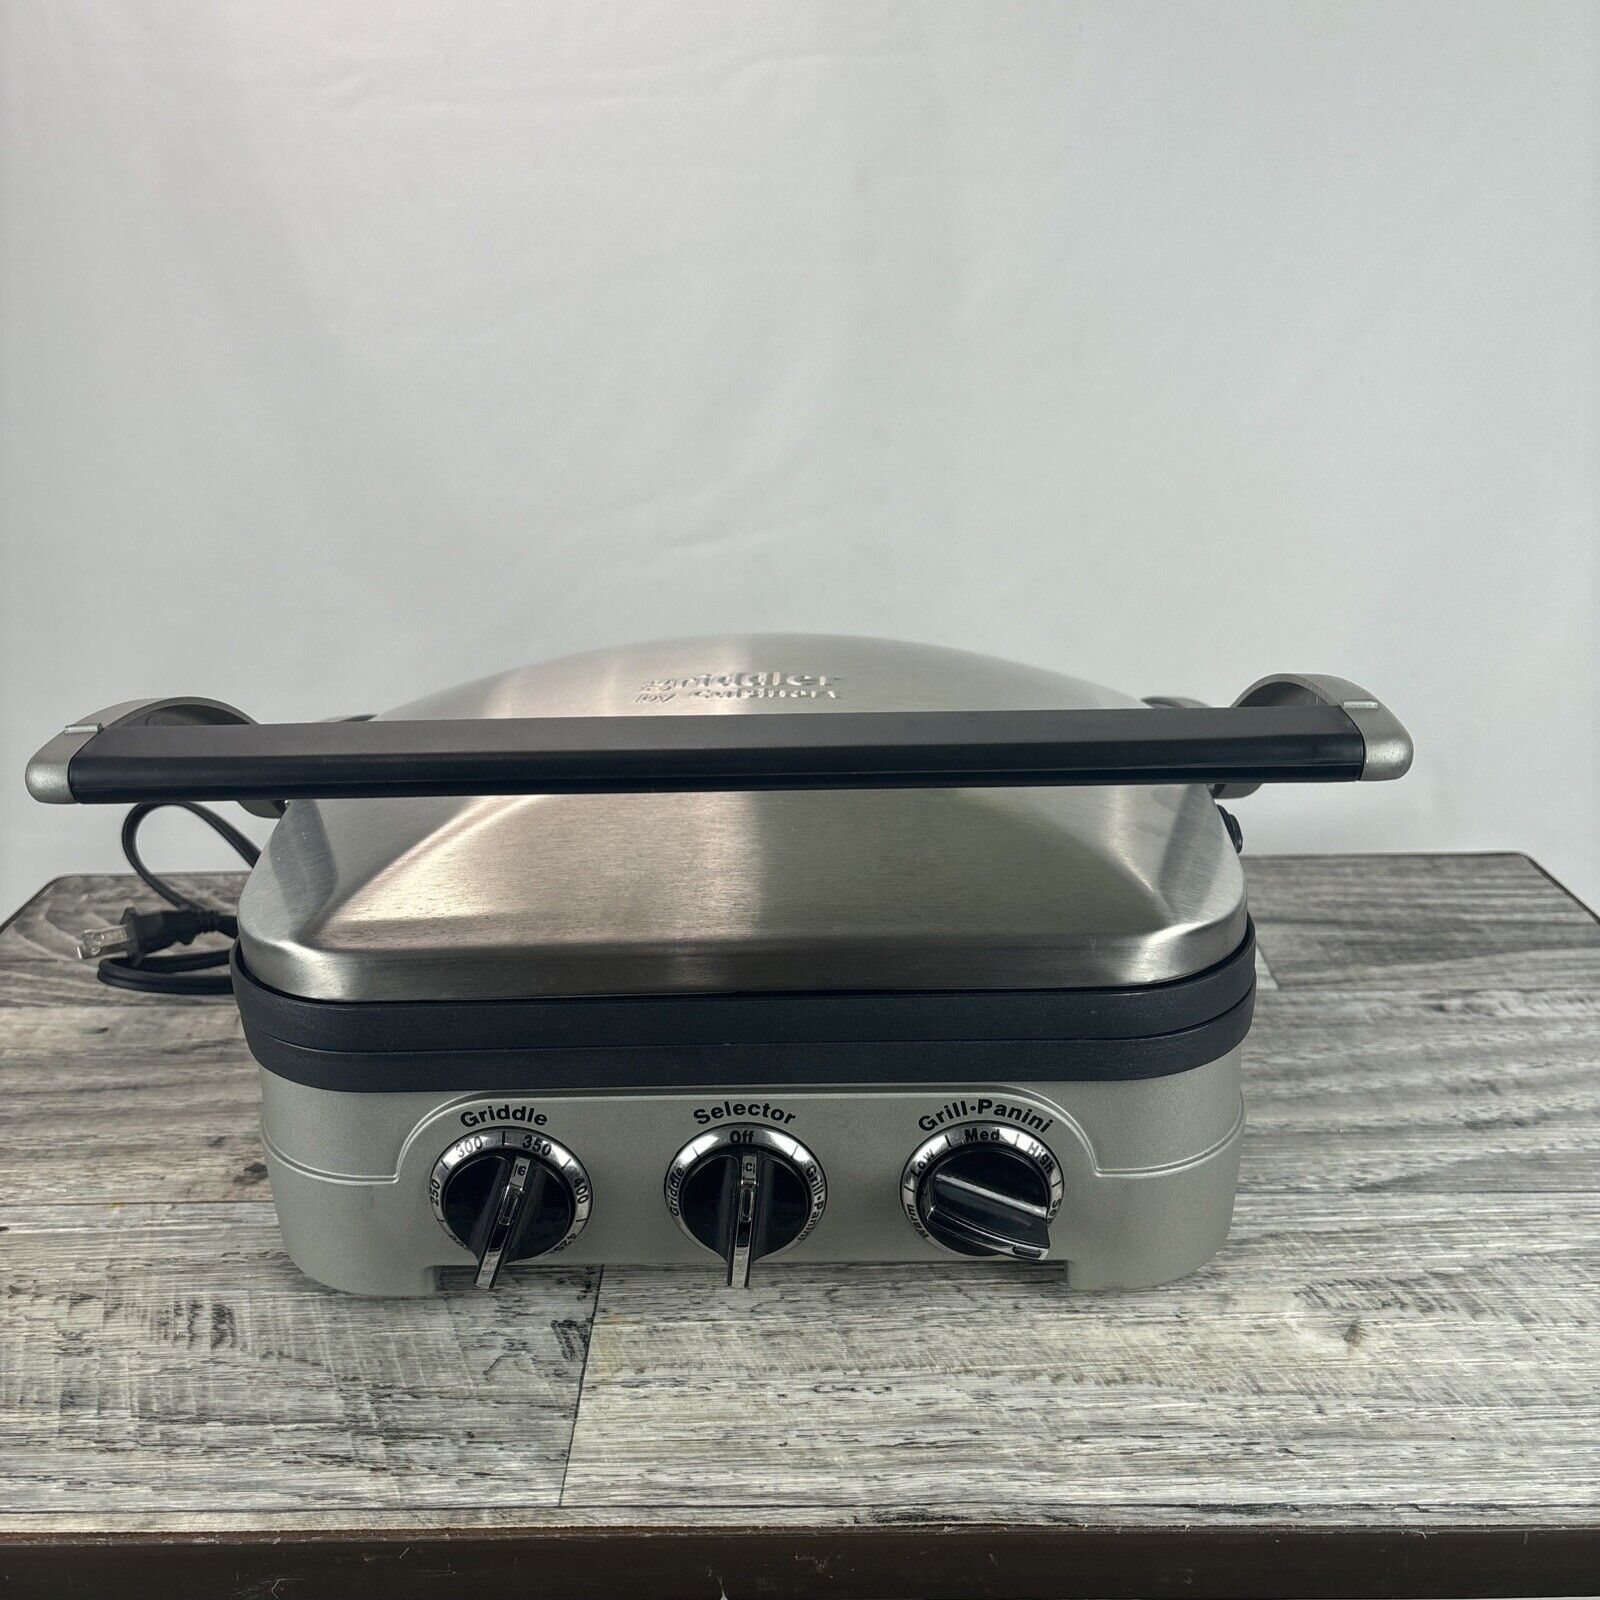 Cuisinart GR-4N Stainless Steel Griddler Panini Press Sandwich Maker 5-In-1